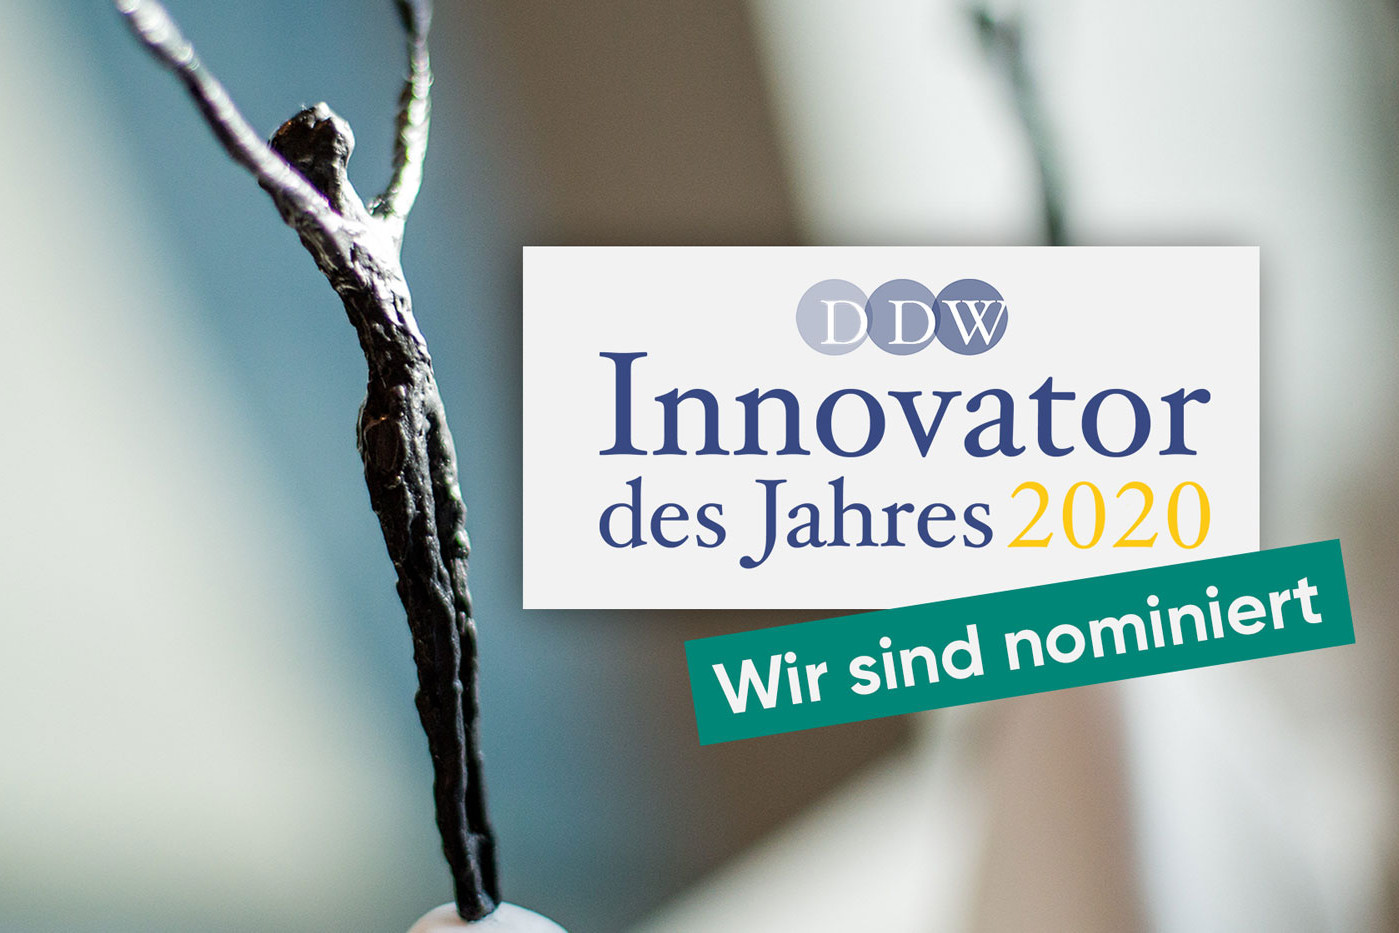 Die GRÜN Software Group GmbH wurde als Innovator des Jahres 2020 nominiert.